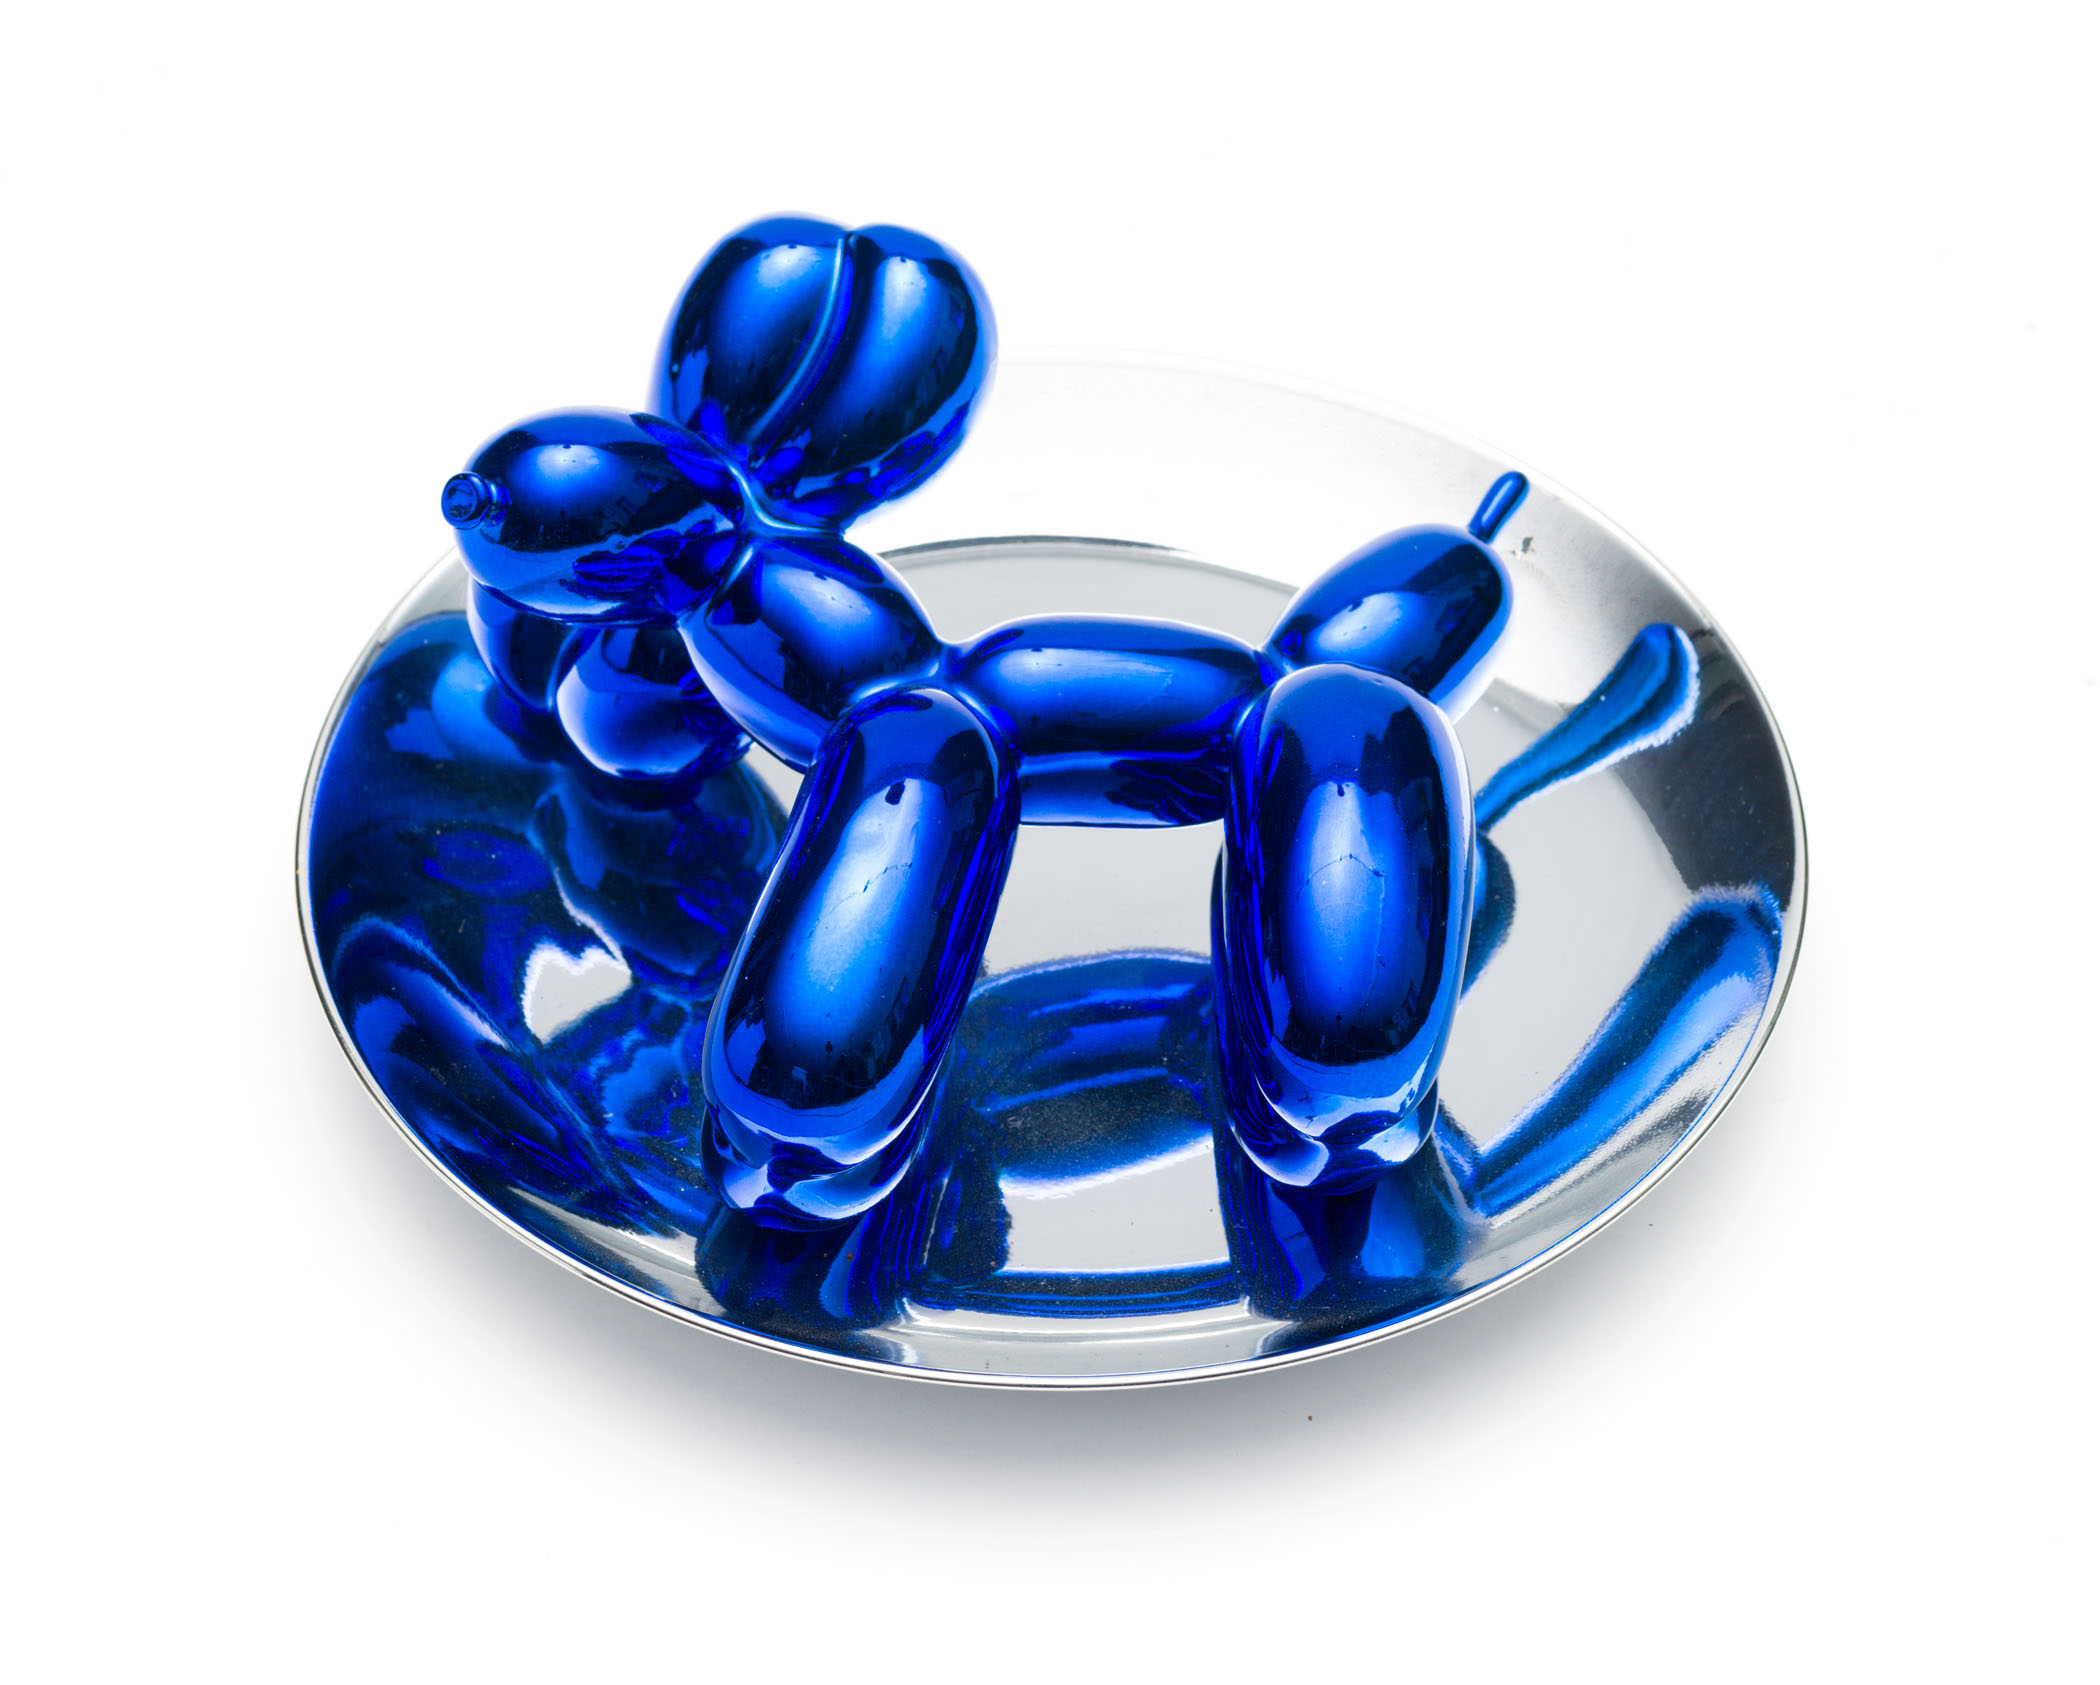 Jeff Koons; Balloon Dog (Blue)